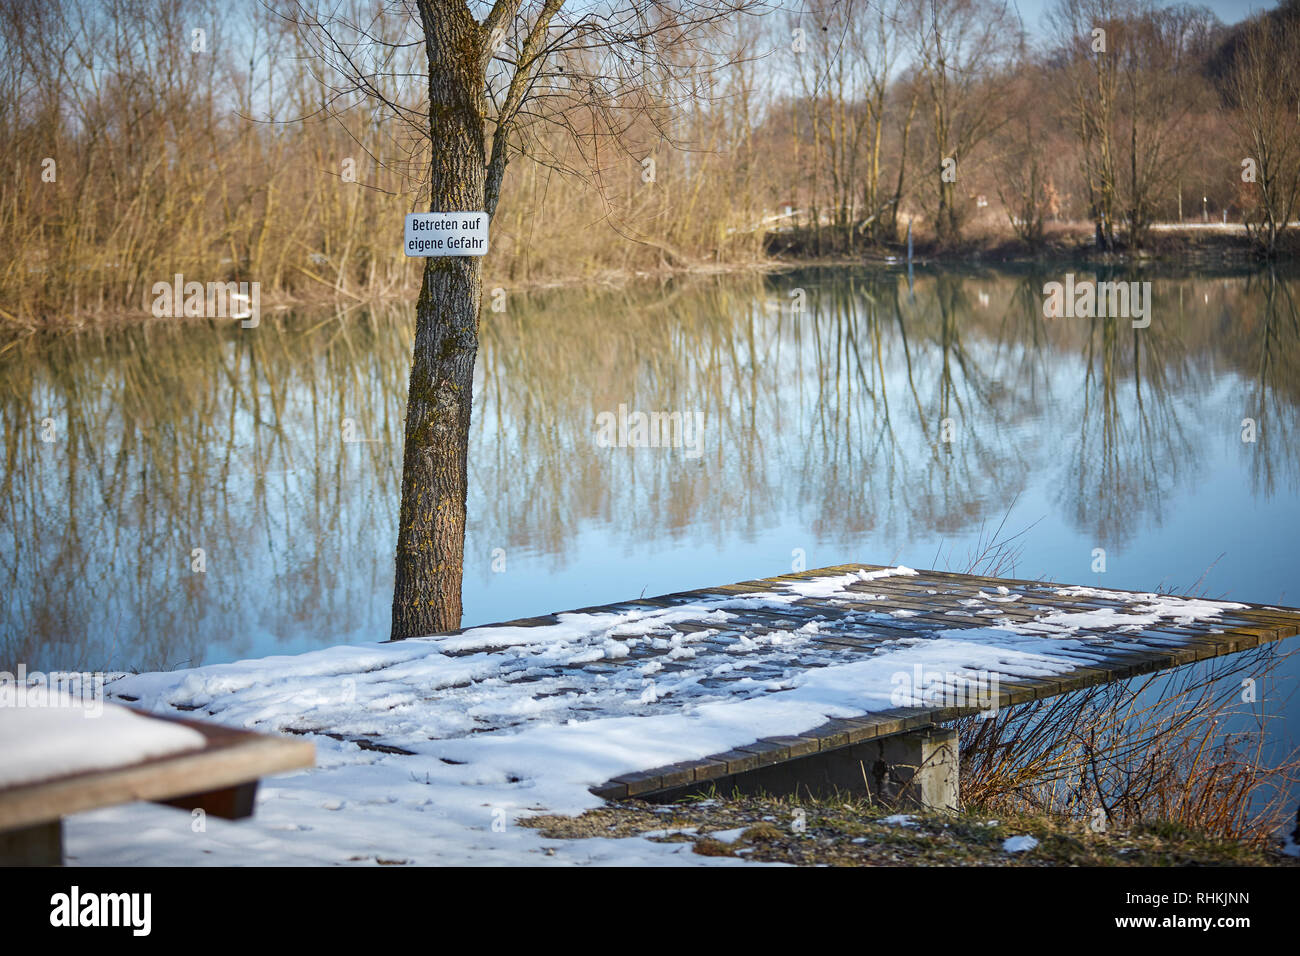 lake with warning Betreten auf eigene Gefahr Stock Photo